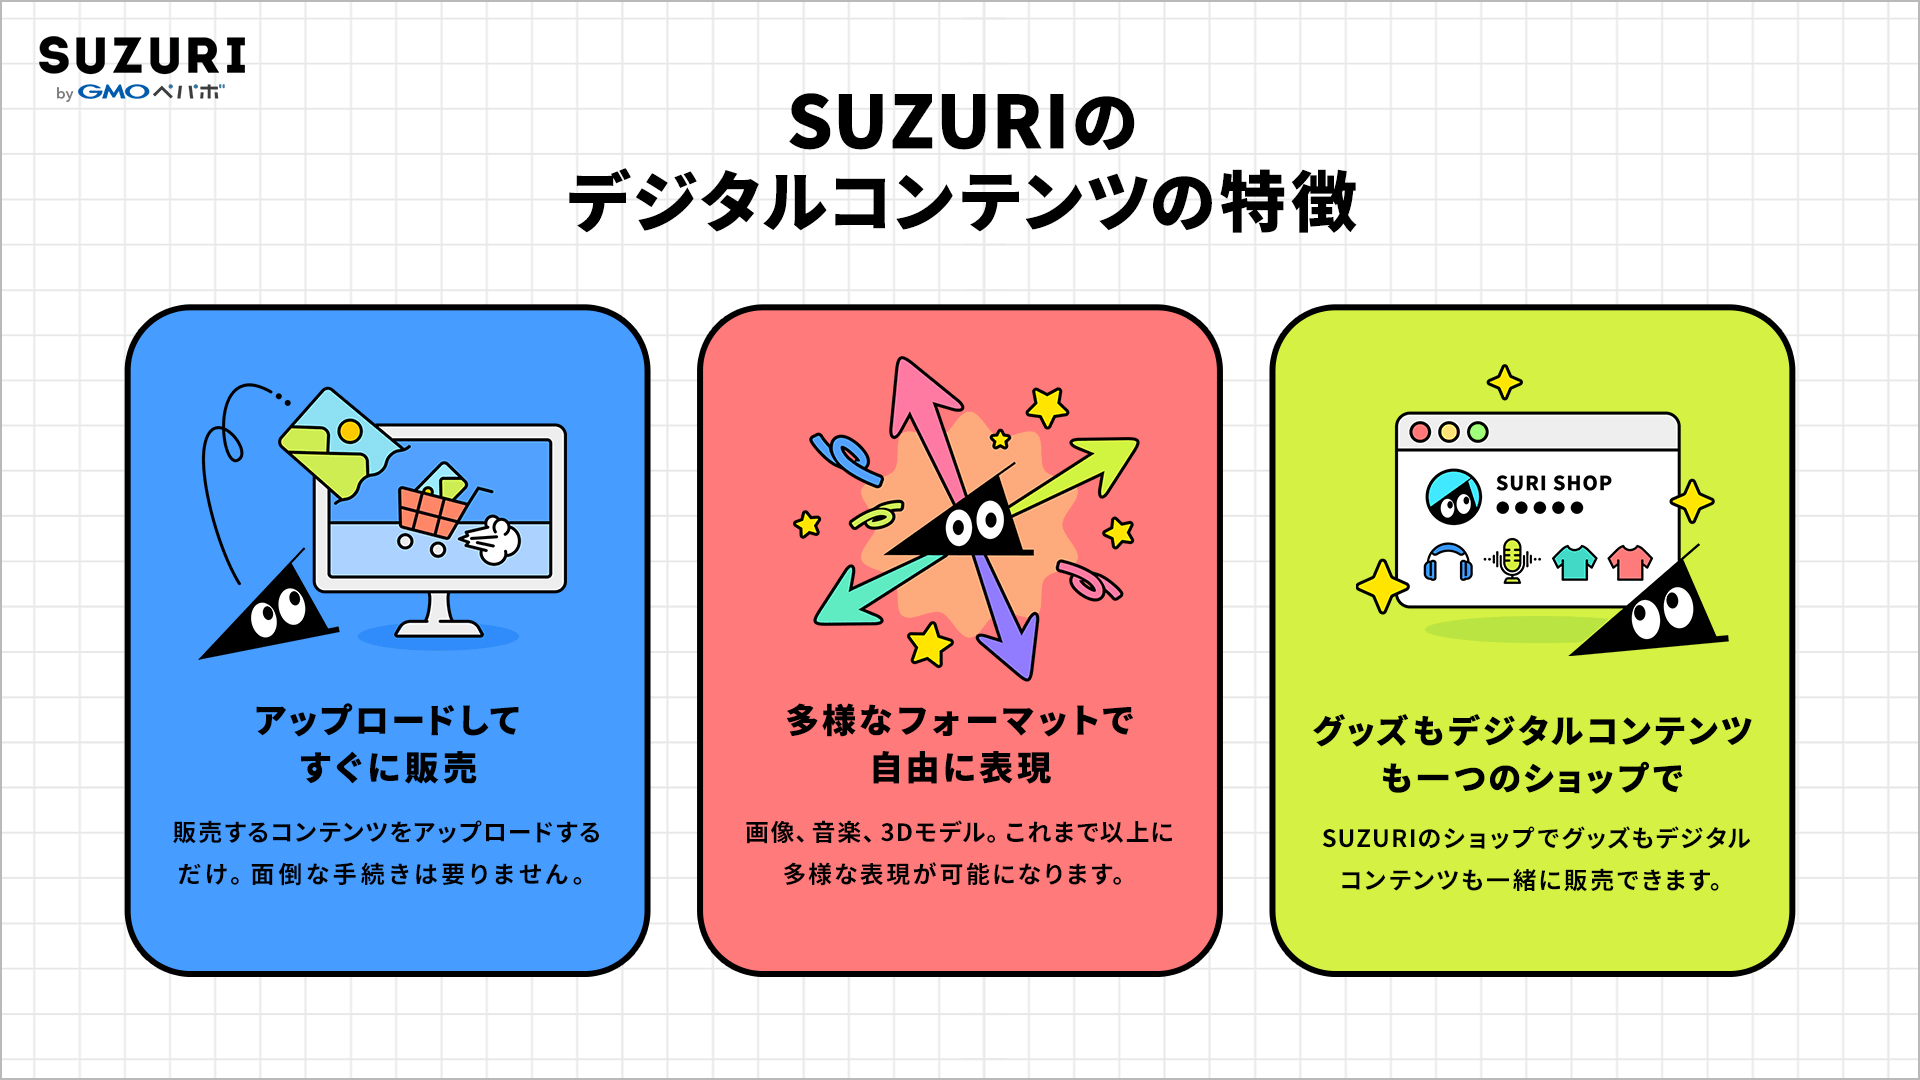 SUZURIのデジタルコンテンツの特徴は大きく分けて3点あります。ひとつめ、アップロードしてすぐに販売。販売するコンテンツをアップロードするだけ。面倒な手続きは要りません。ふたつめ、多様なフォーマットで自由に表現。画像、音楽、３Dモデル。これまで以上に多様な表現が可能になります。最後にみっつめ、グッズもデジタルコンテンツも一つのショップで。SUZURIのショップでグッズもデジタルコンテンツも一緒に販売できます。